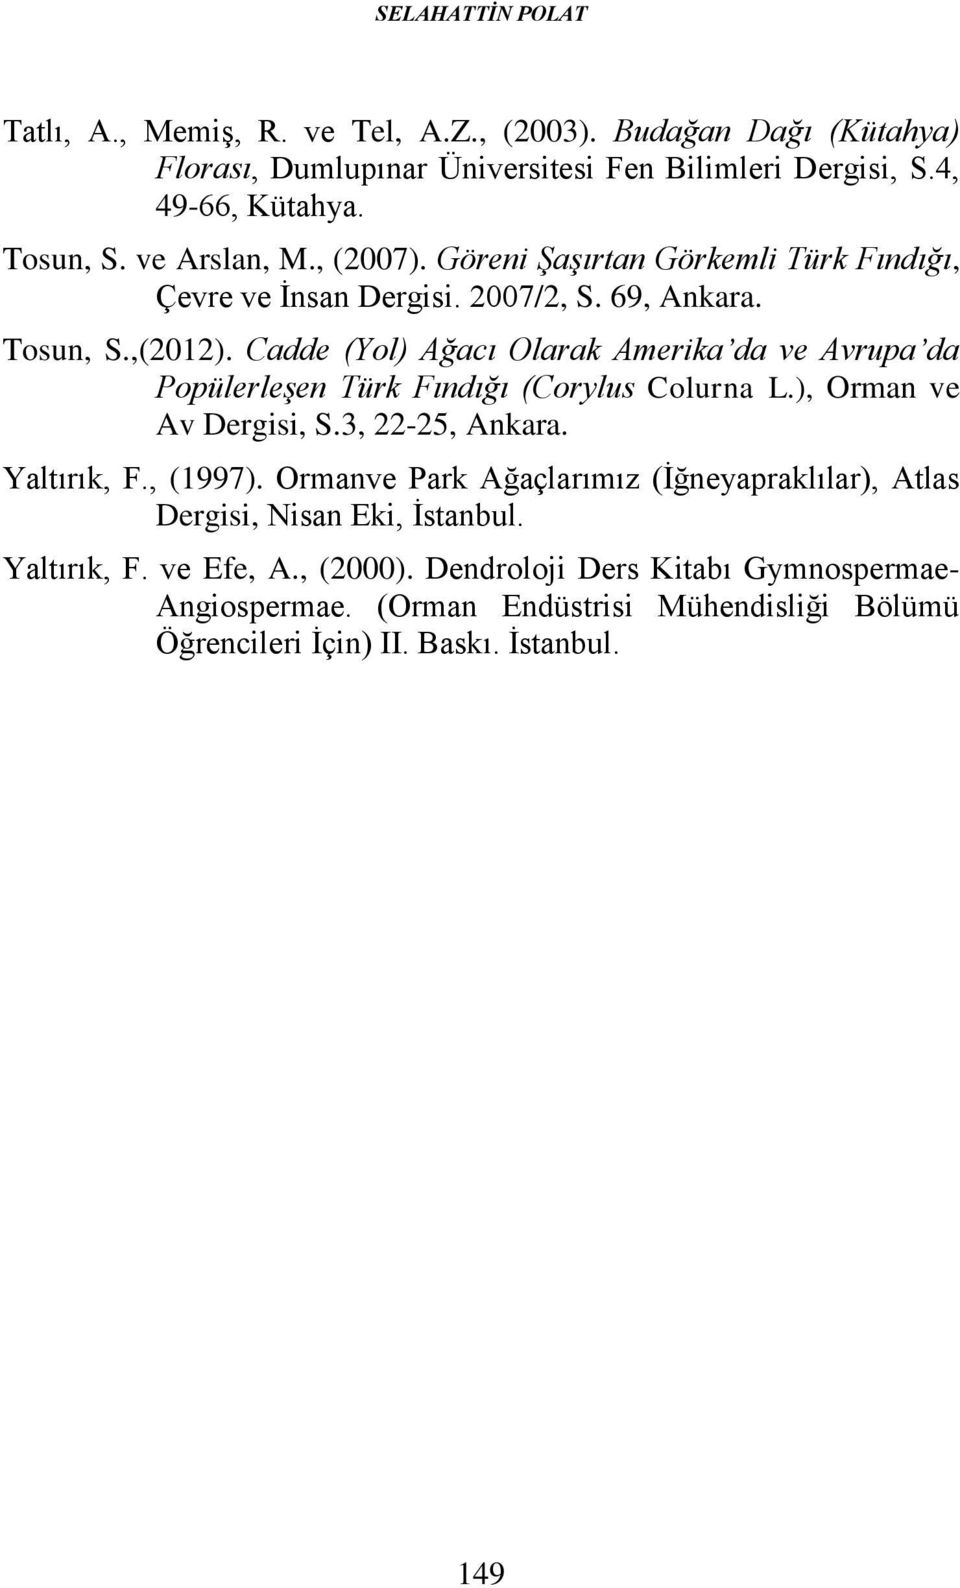 Cadde (Yol) Ağacı Olarak Amerika da ve Avrupa da Popülerleşen Türk Fındığı (Corylus Colurna L.), Orman ve Av Dergisi, S.3, 22-25, Ankara. Yaltırık, F., (1997).